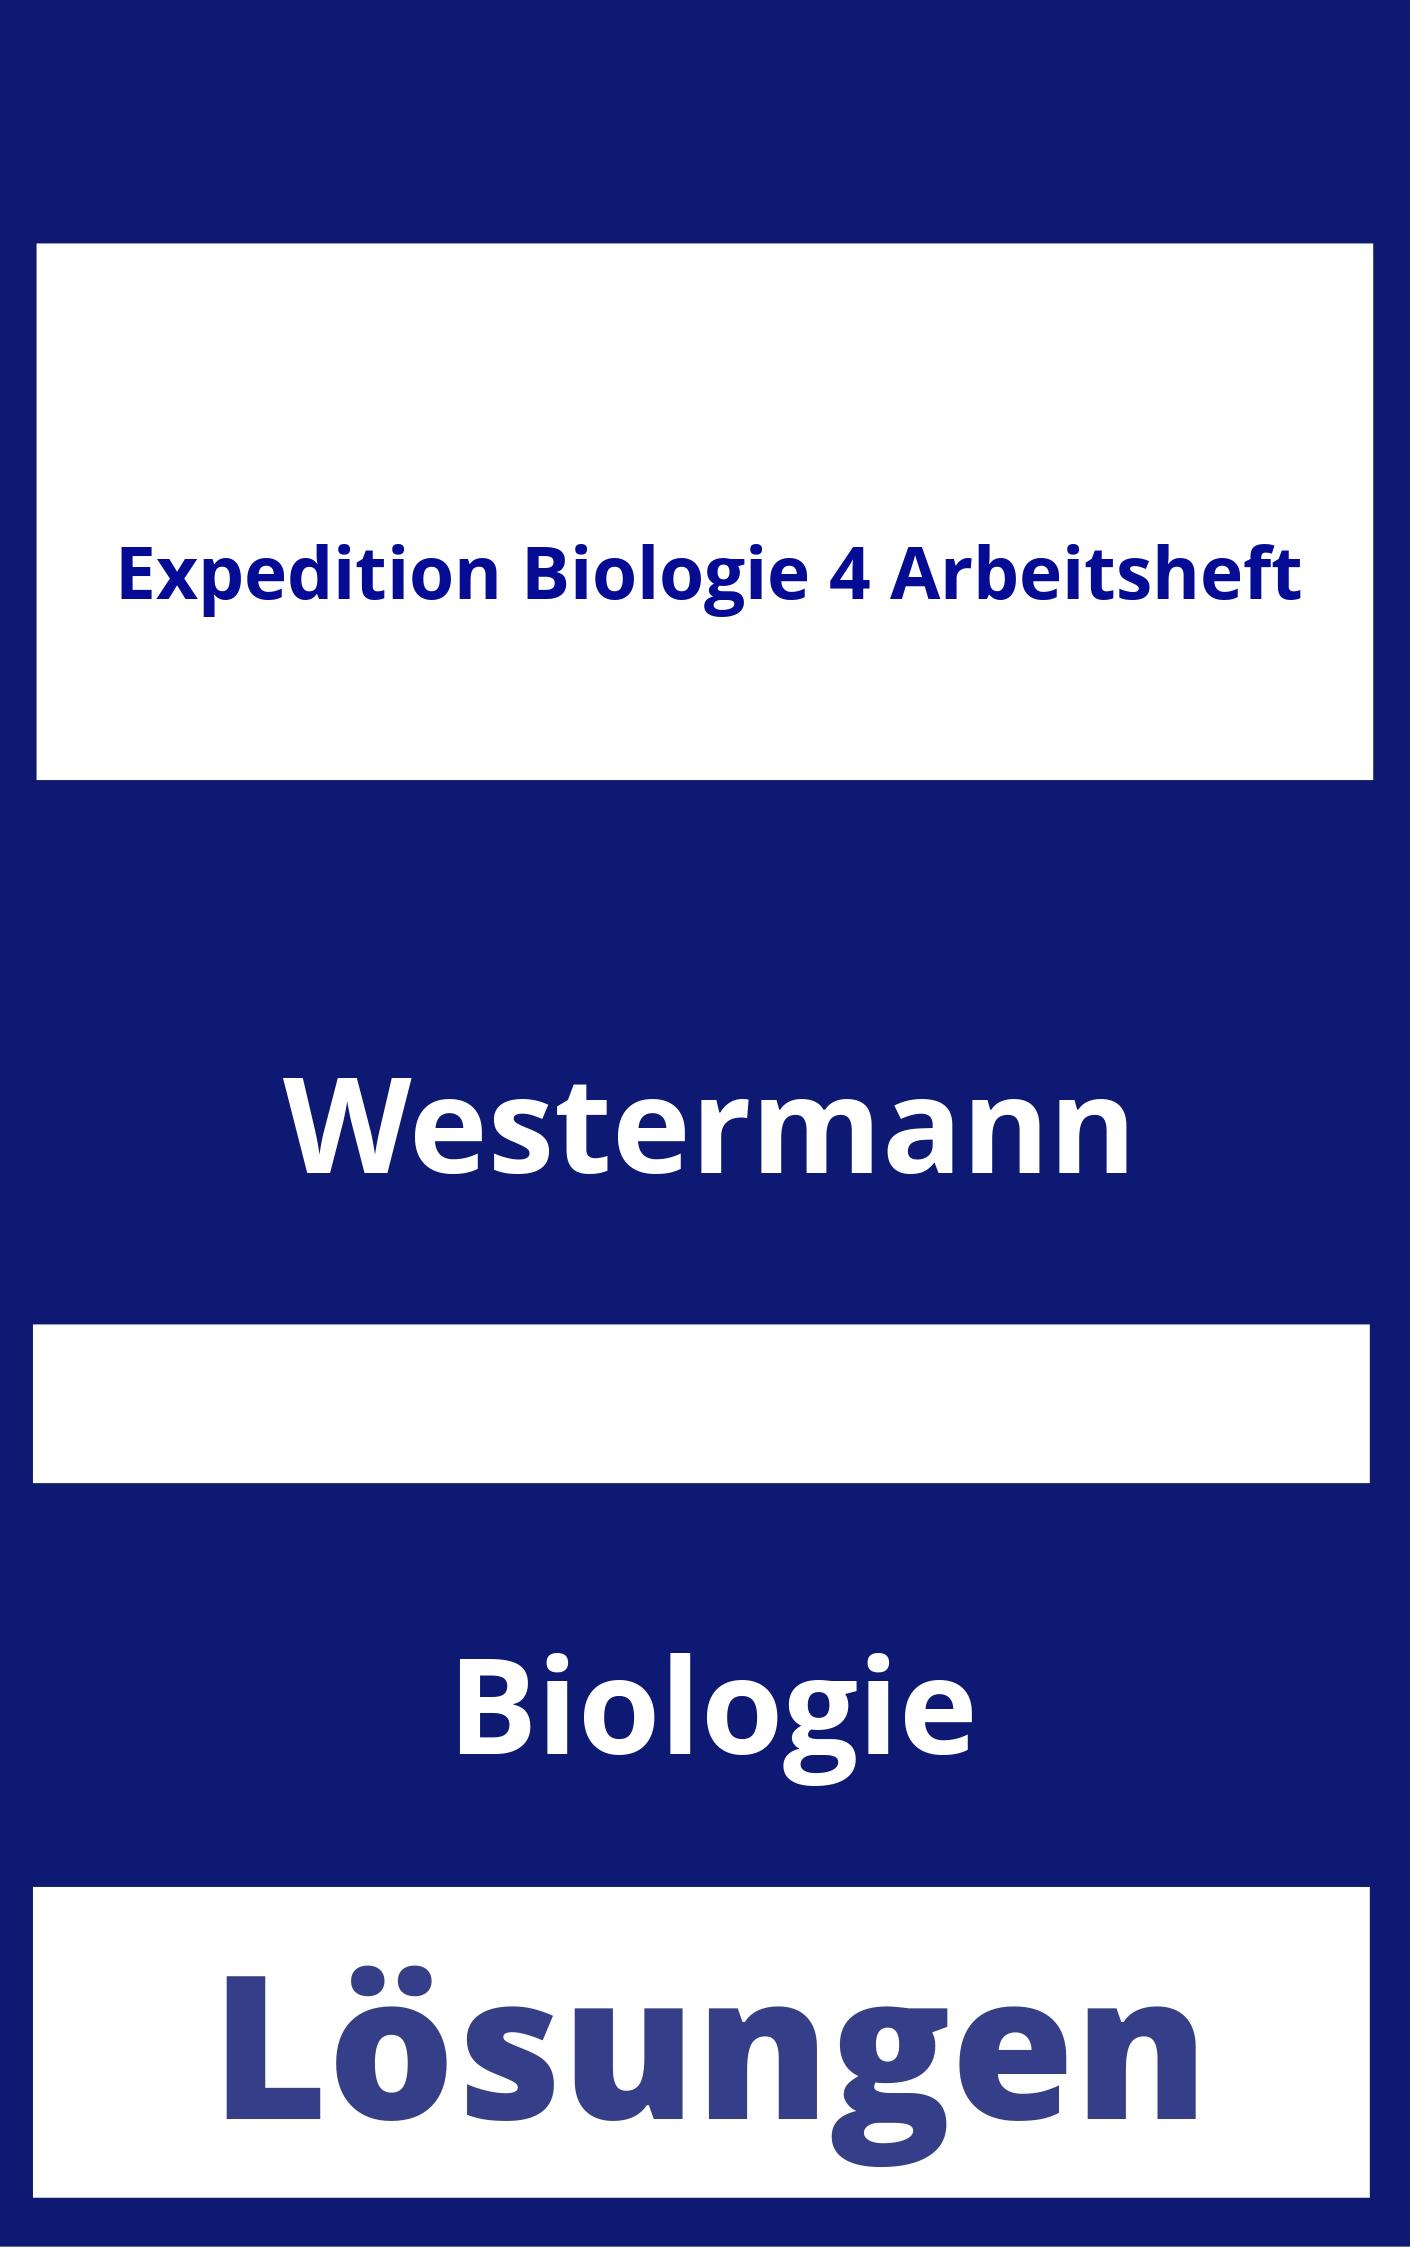 Expedition Biologie 4 Arbeitsheft